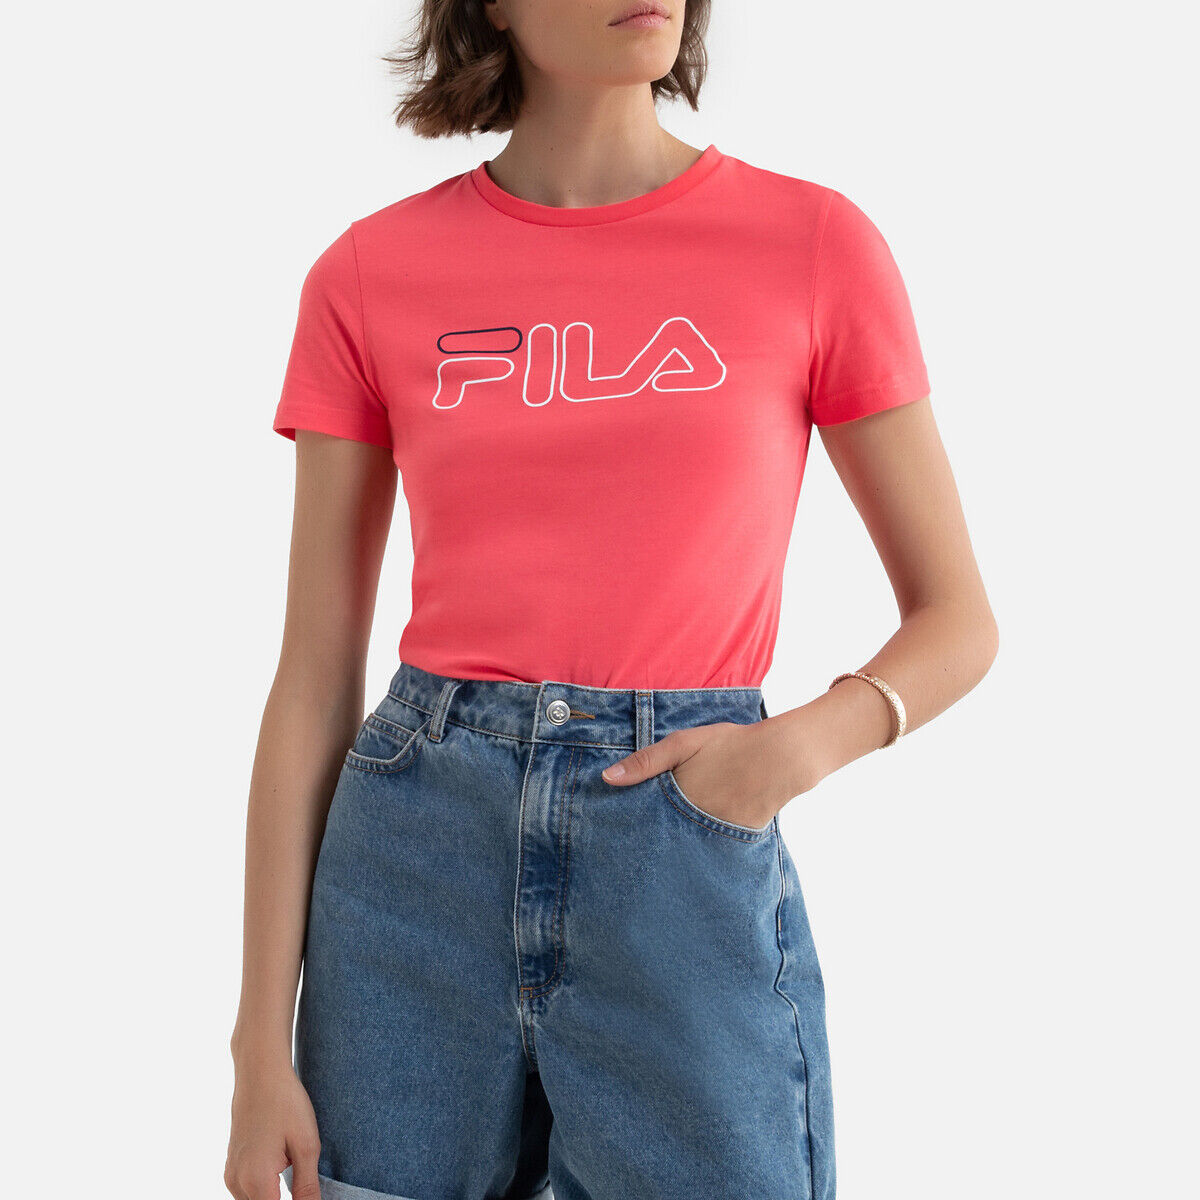 Fila T-shirt em algodão, mangas curtas, LADAN   rosa-coral